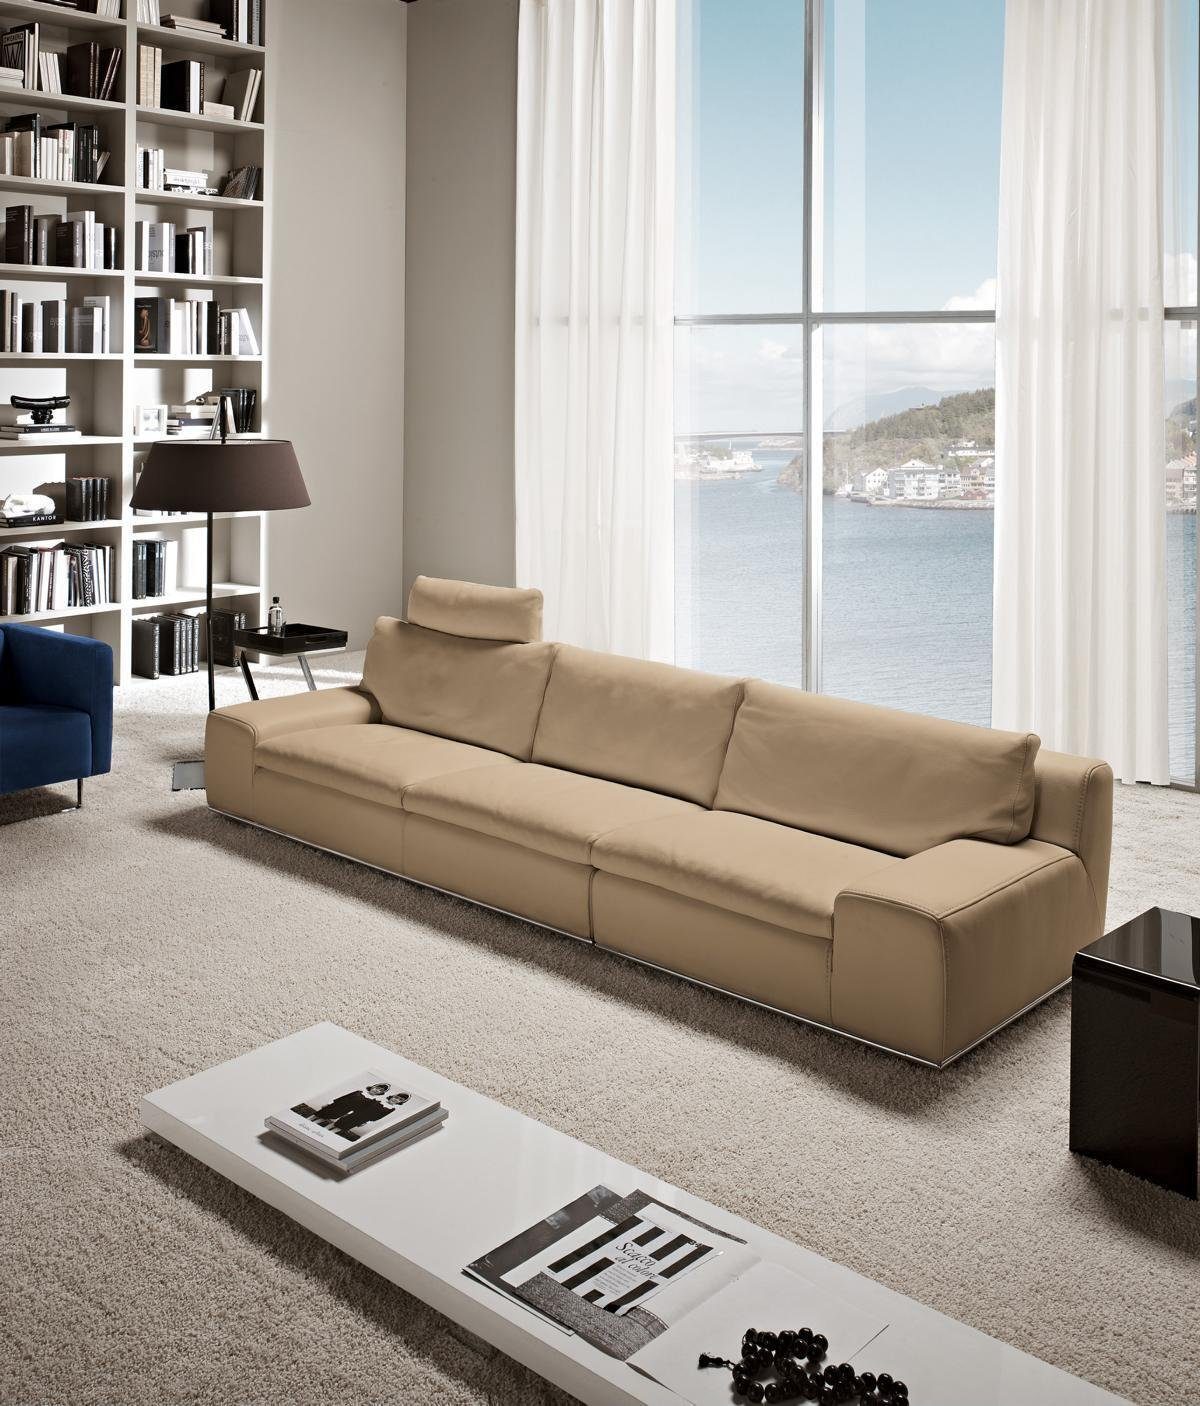 JVmoebel Sofa Sofa 4 Sitzer Big xxl Couch Sofas Couchen Wohnzimmer Design Viersitzer Braun